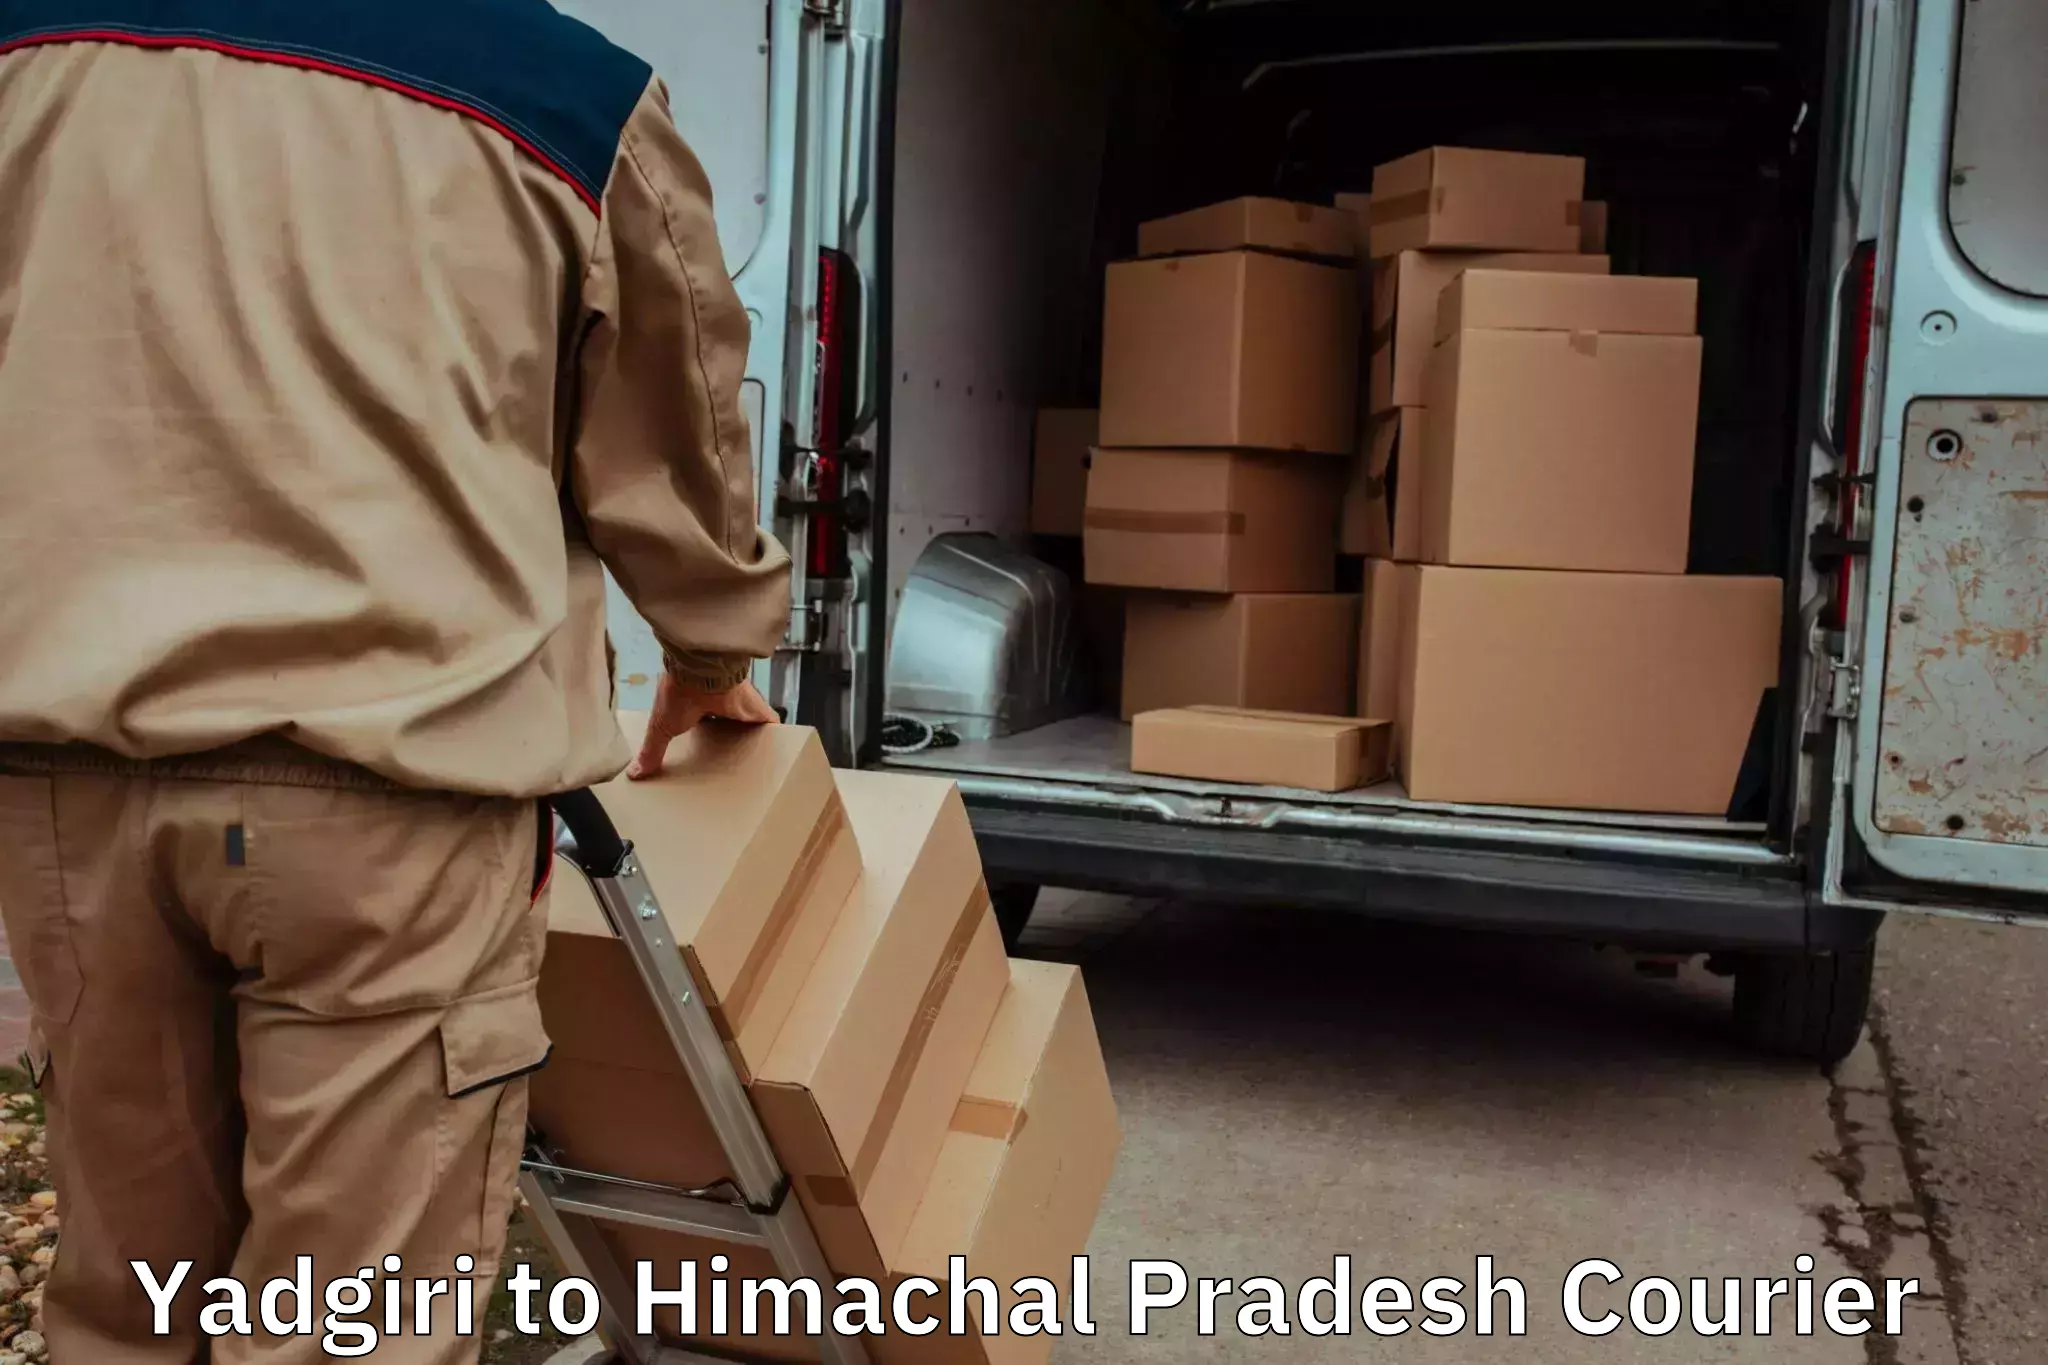 Reliable furniture movers Yadgiri to IIT Mandi